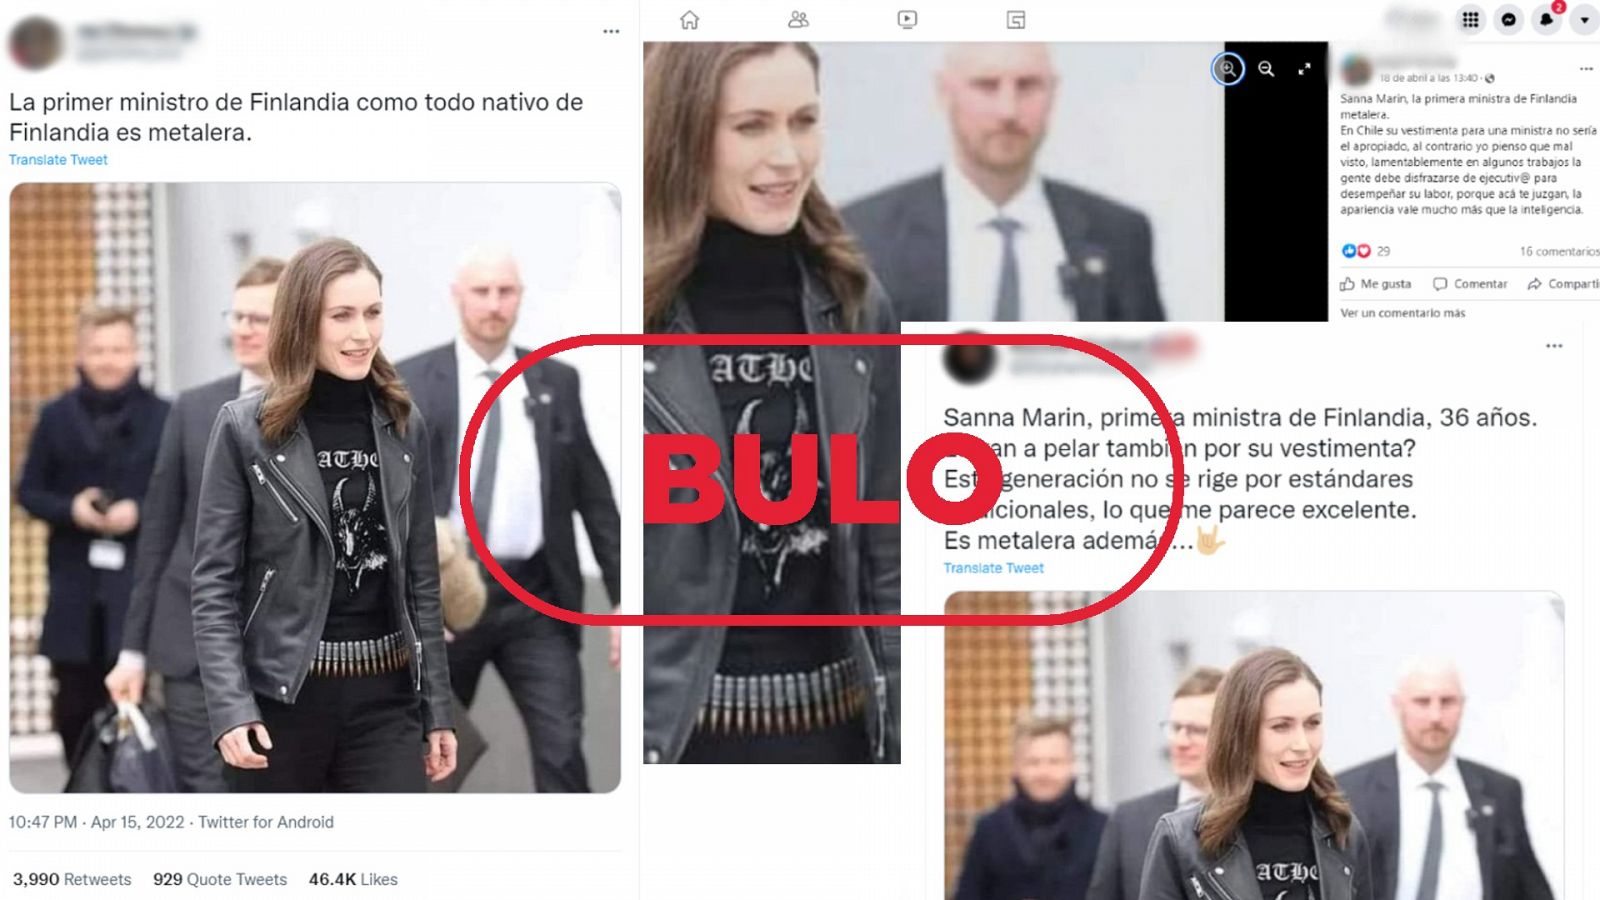 Mensajes de Twitter y Facebook que difunden que la primera ministra de Finlandia lleva una camisea heavy metal, con el sello bulo en rojo de VerificaRTVE